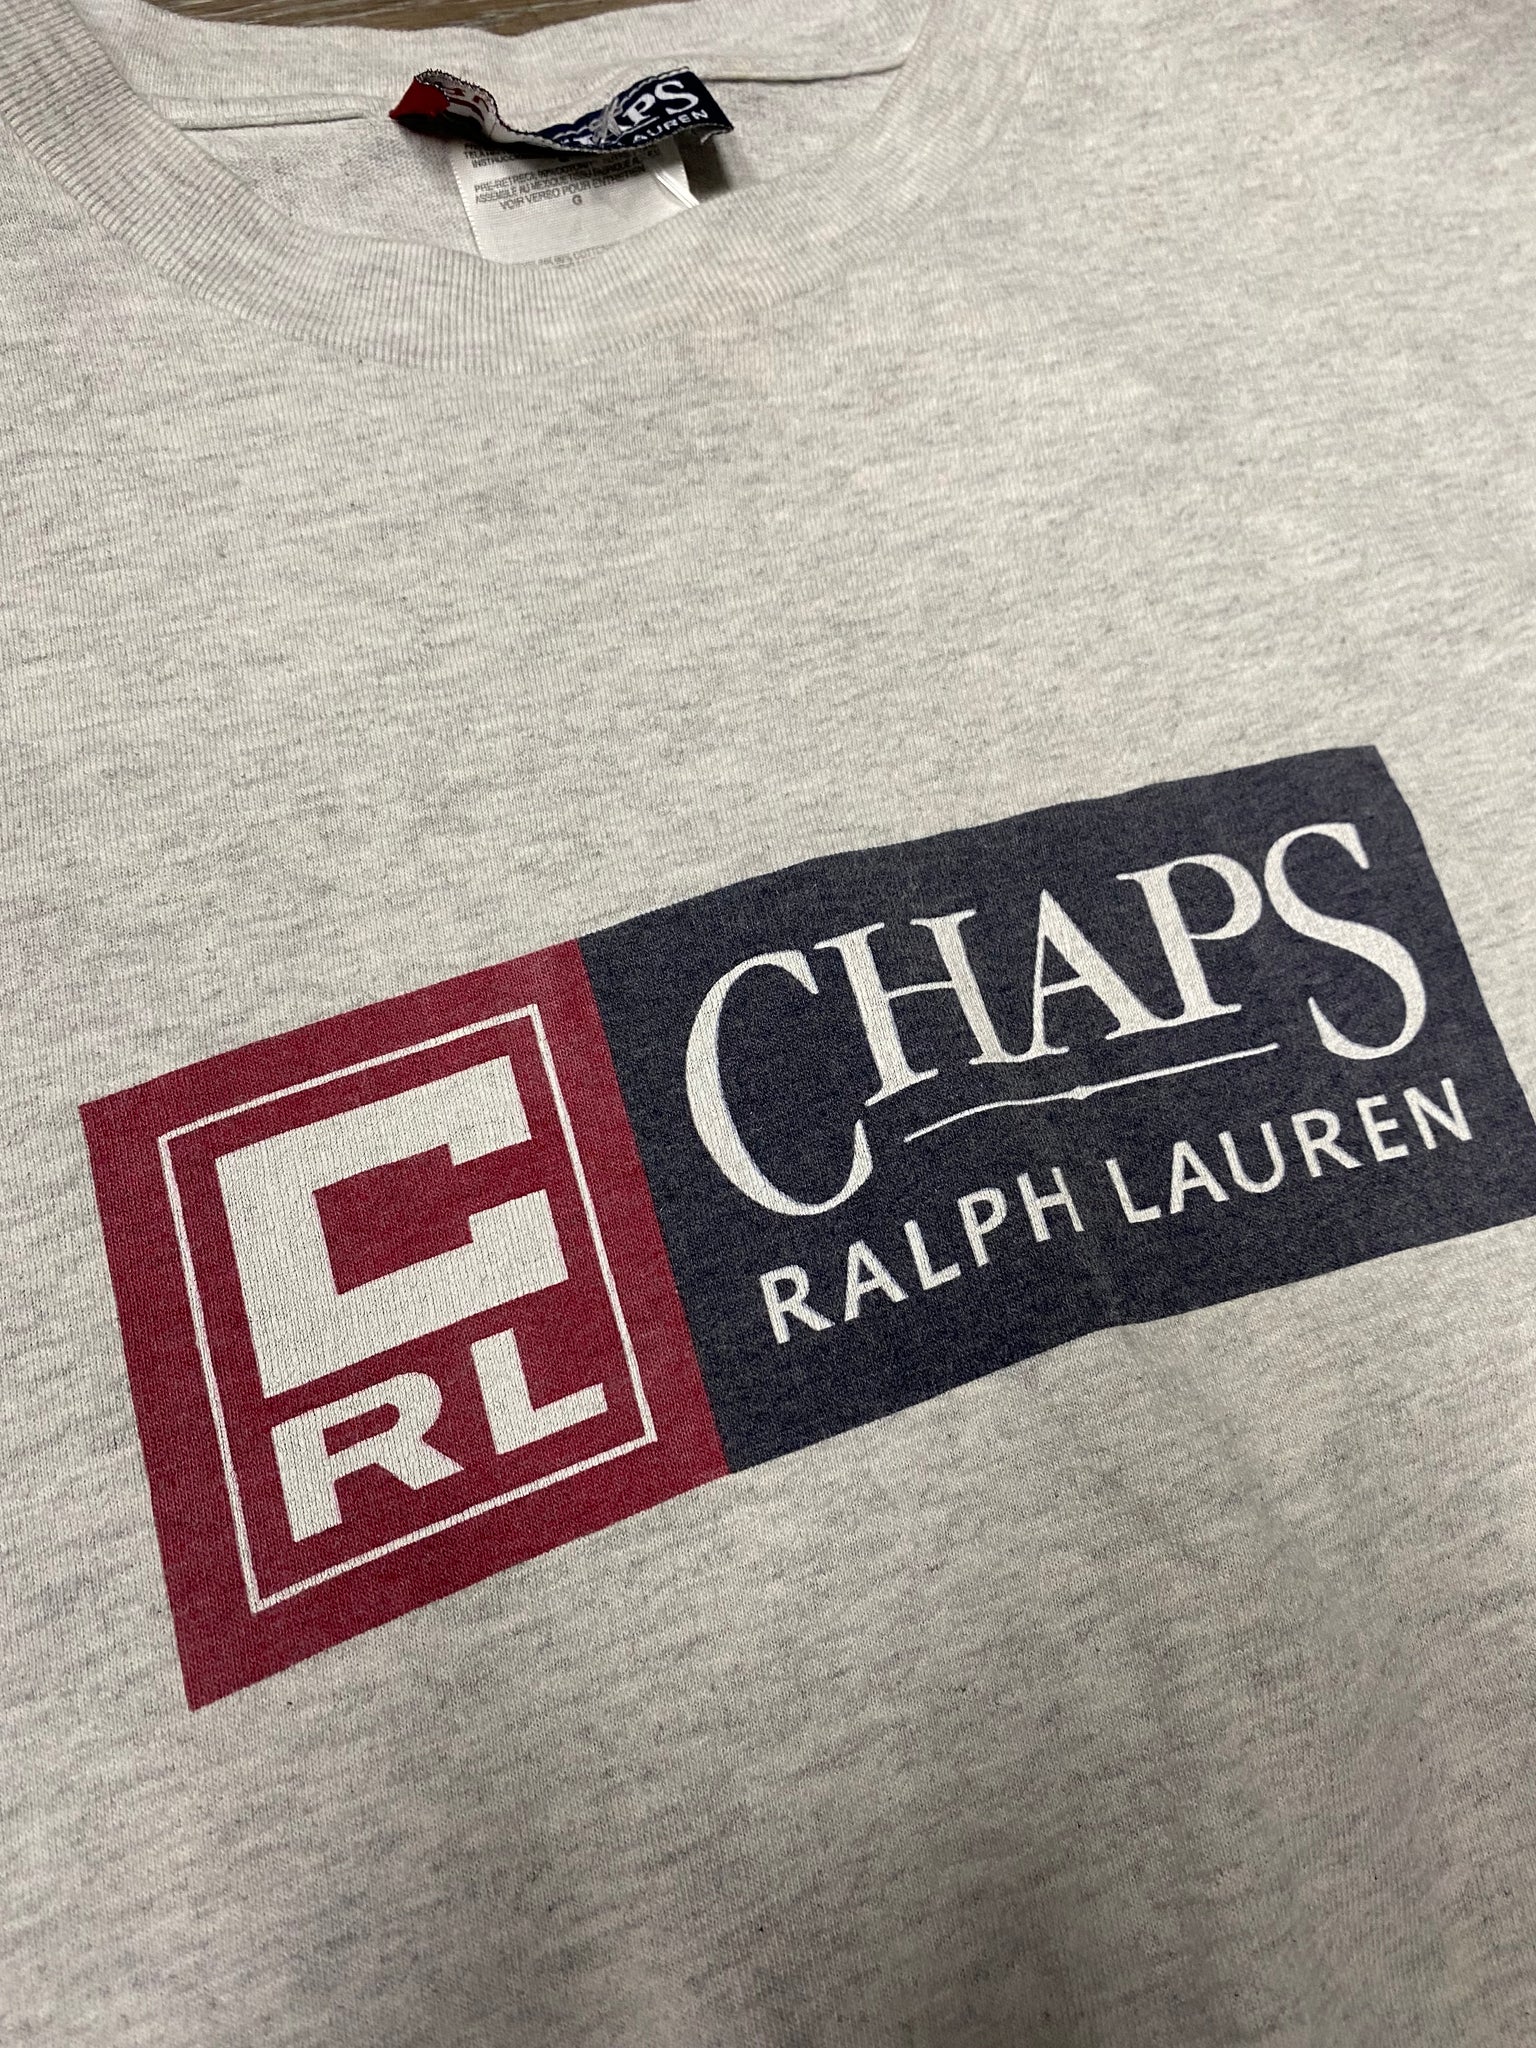 L) 90s Chaps Ralph Lauren vintage tee – Elevate Kicks